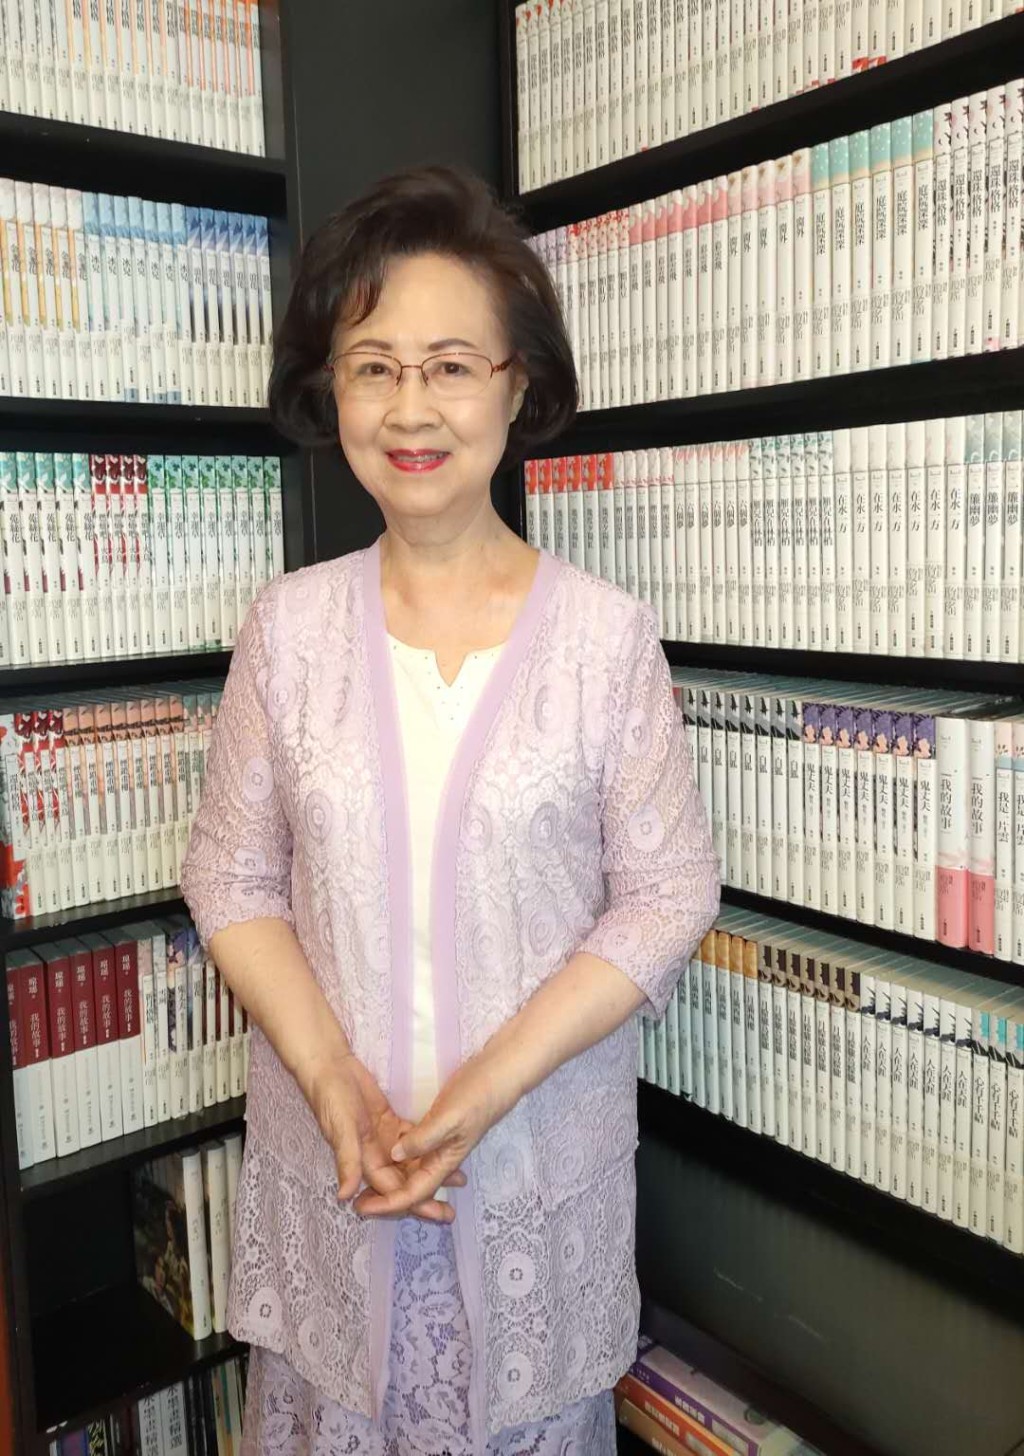 瓊瑤是台灣知名作家。